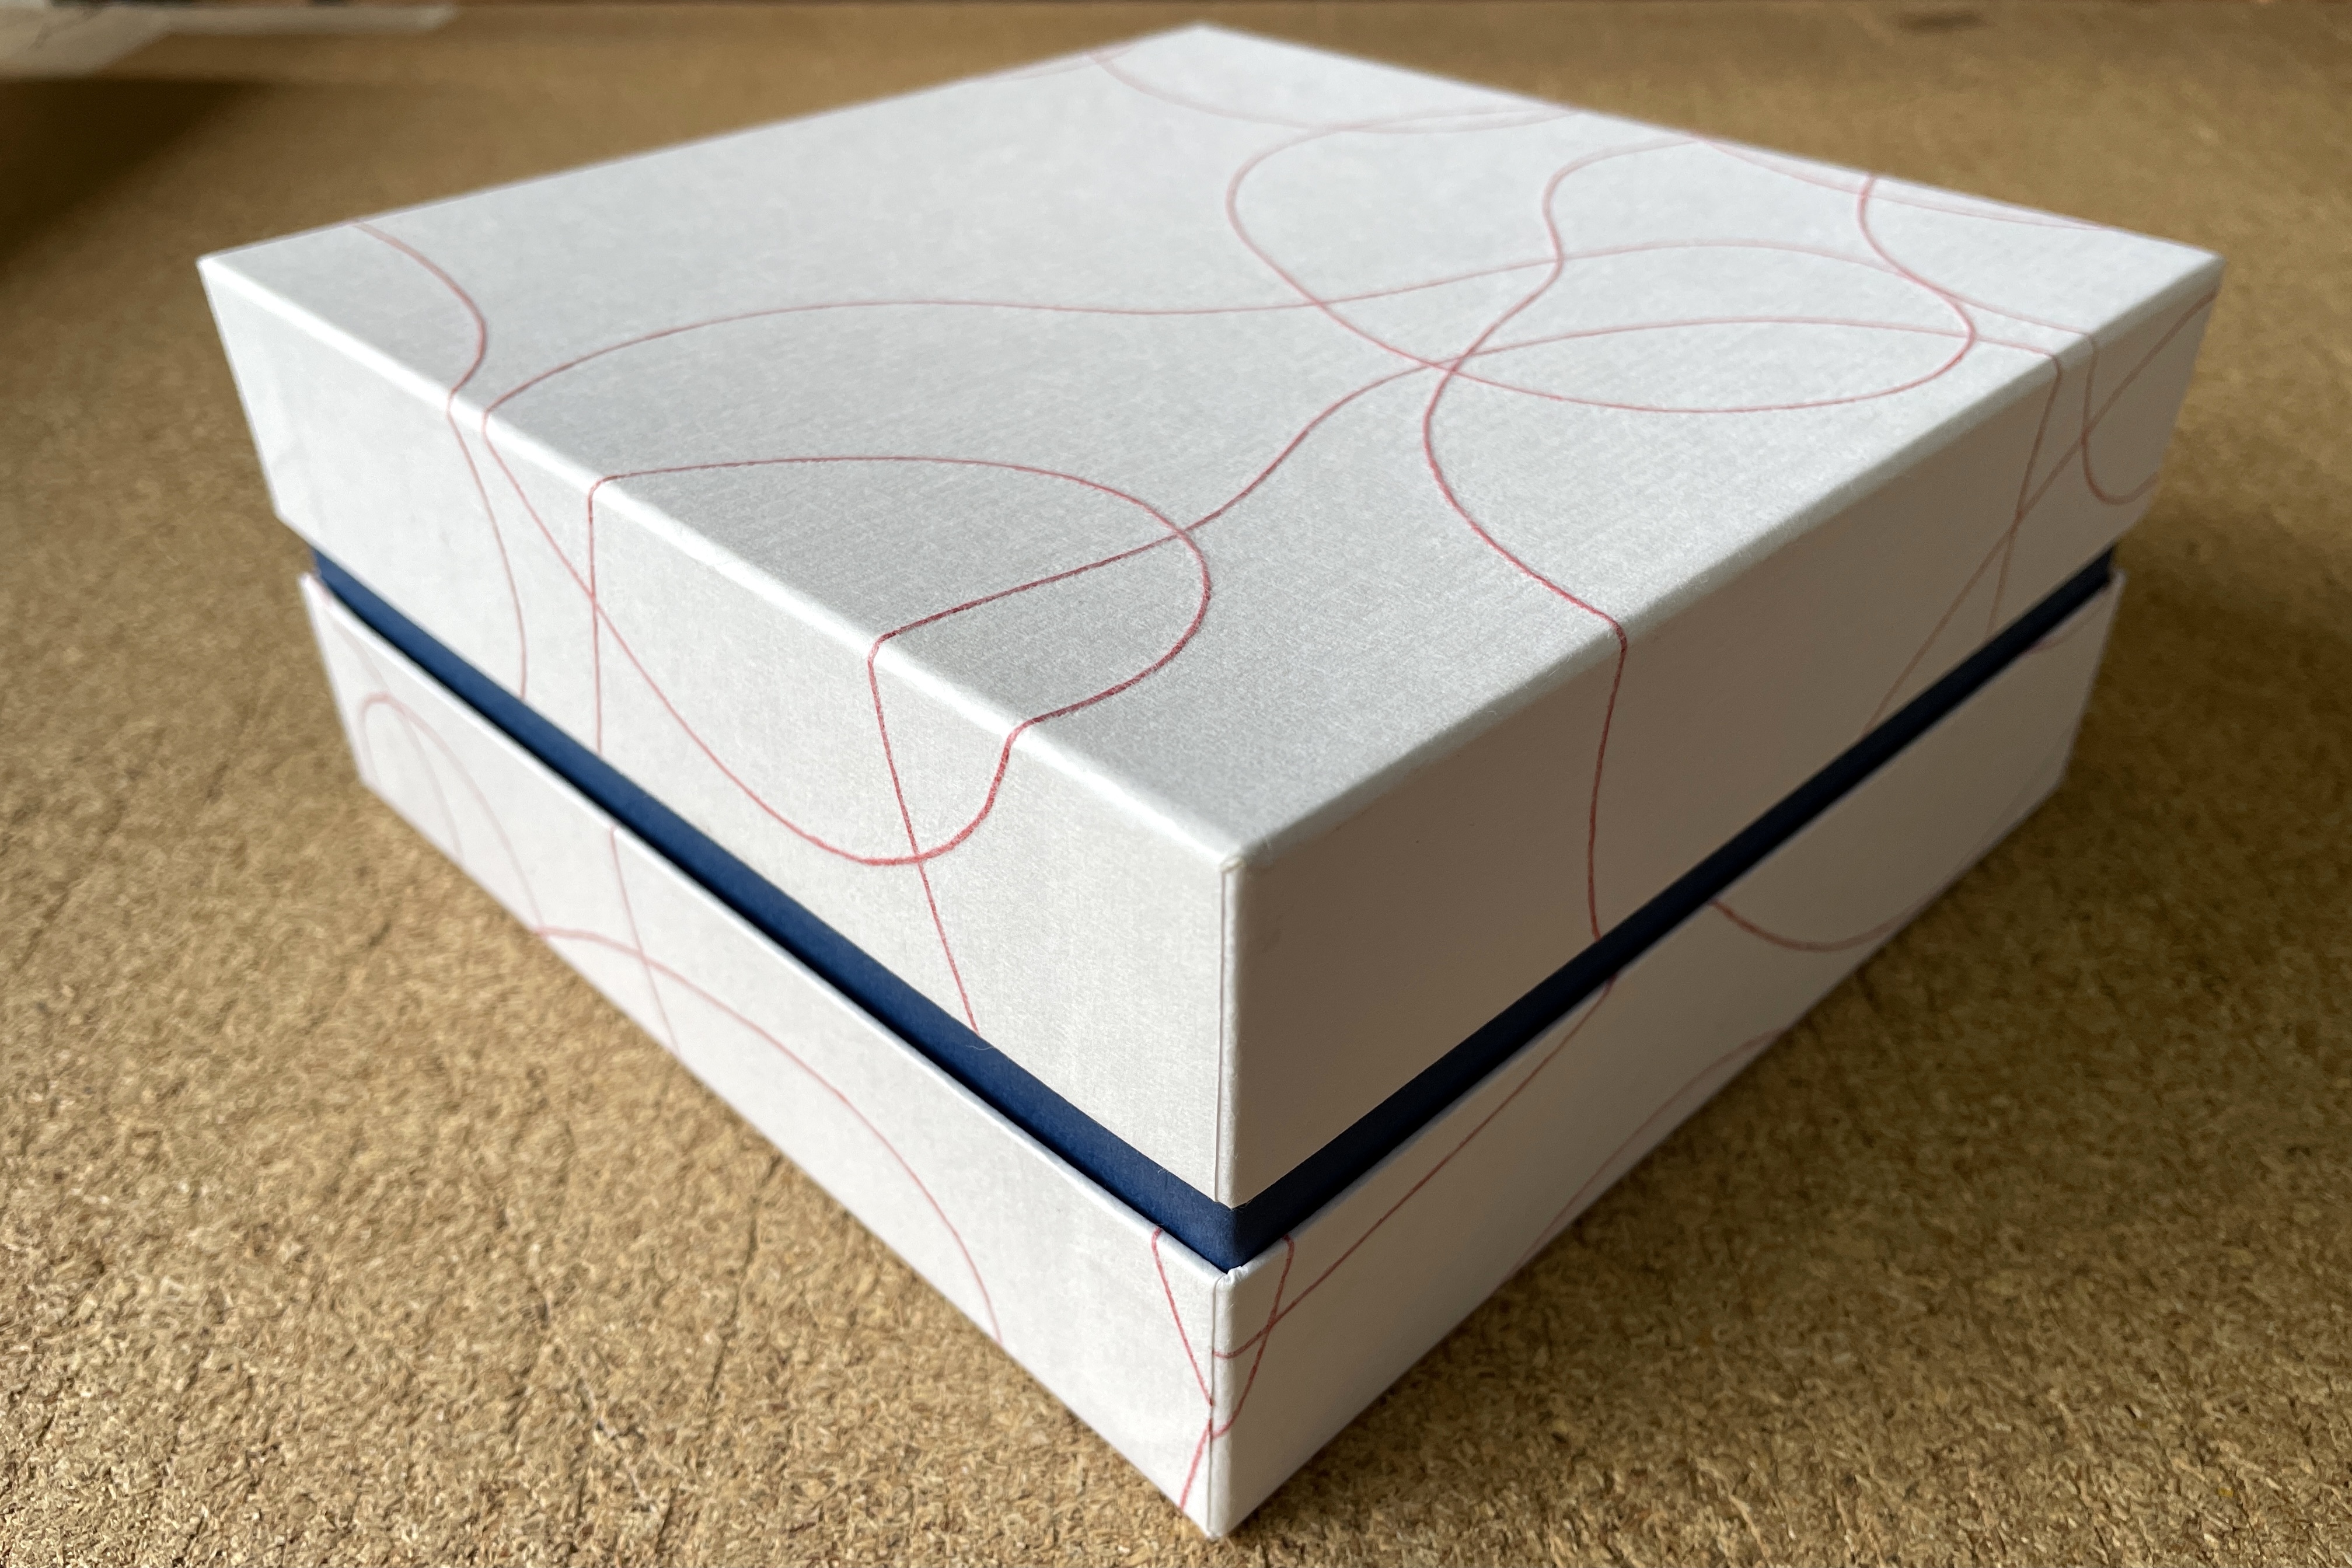 紙紐を漉き込んだ和紙と青色の小間紙でトリコロールを表現した印籠型貼り箱を試作しました